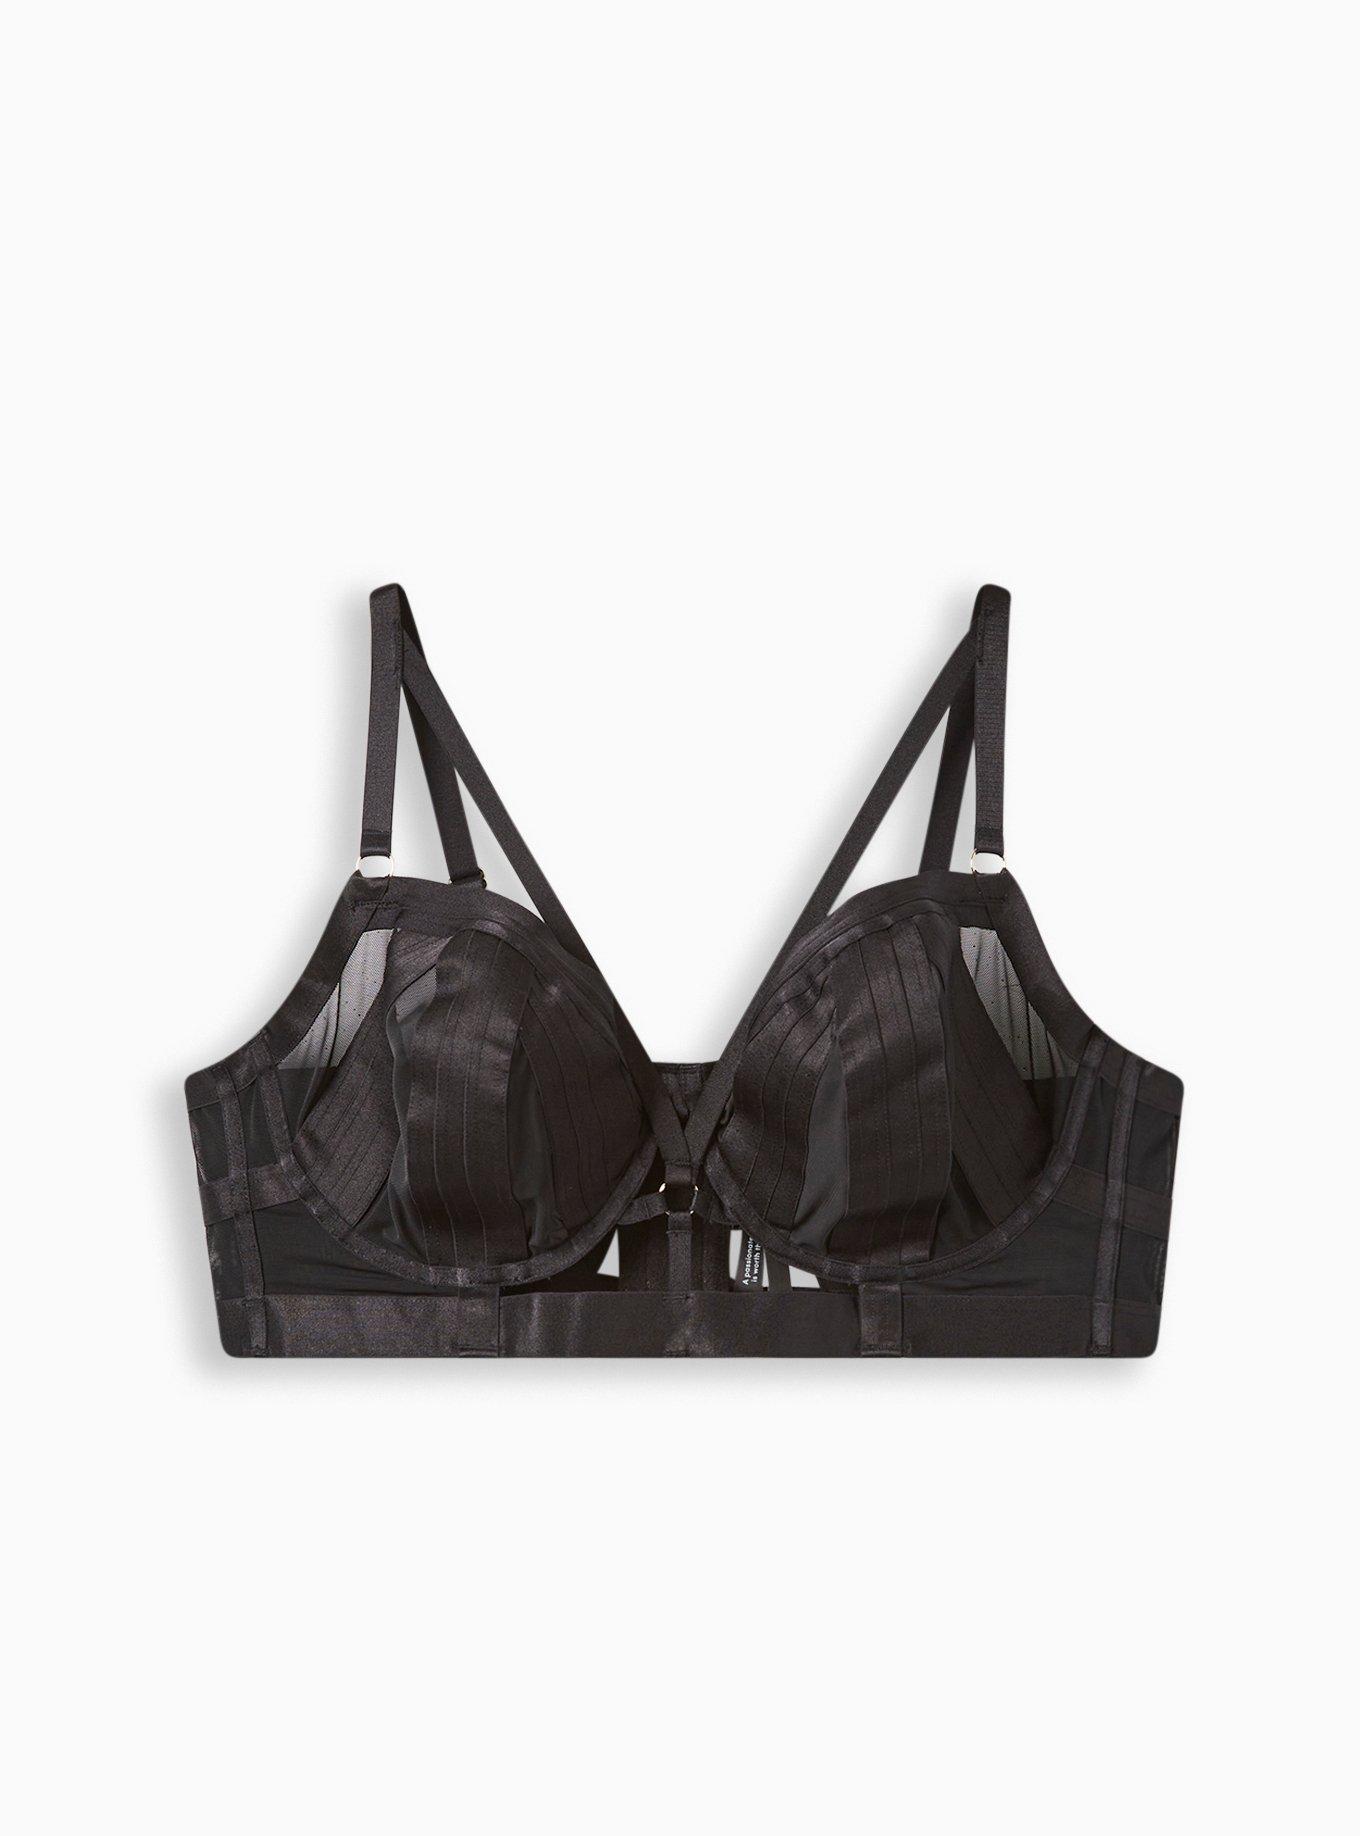 Victoria's Secret Black Strappy Mesh Cup Sports Bra Size XL - $15